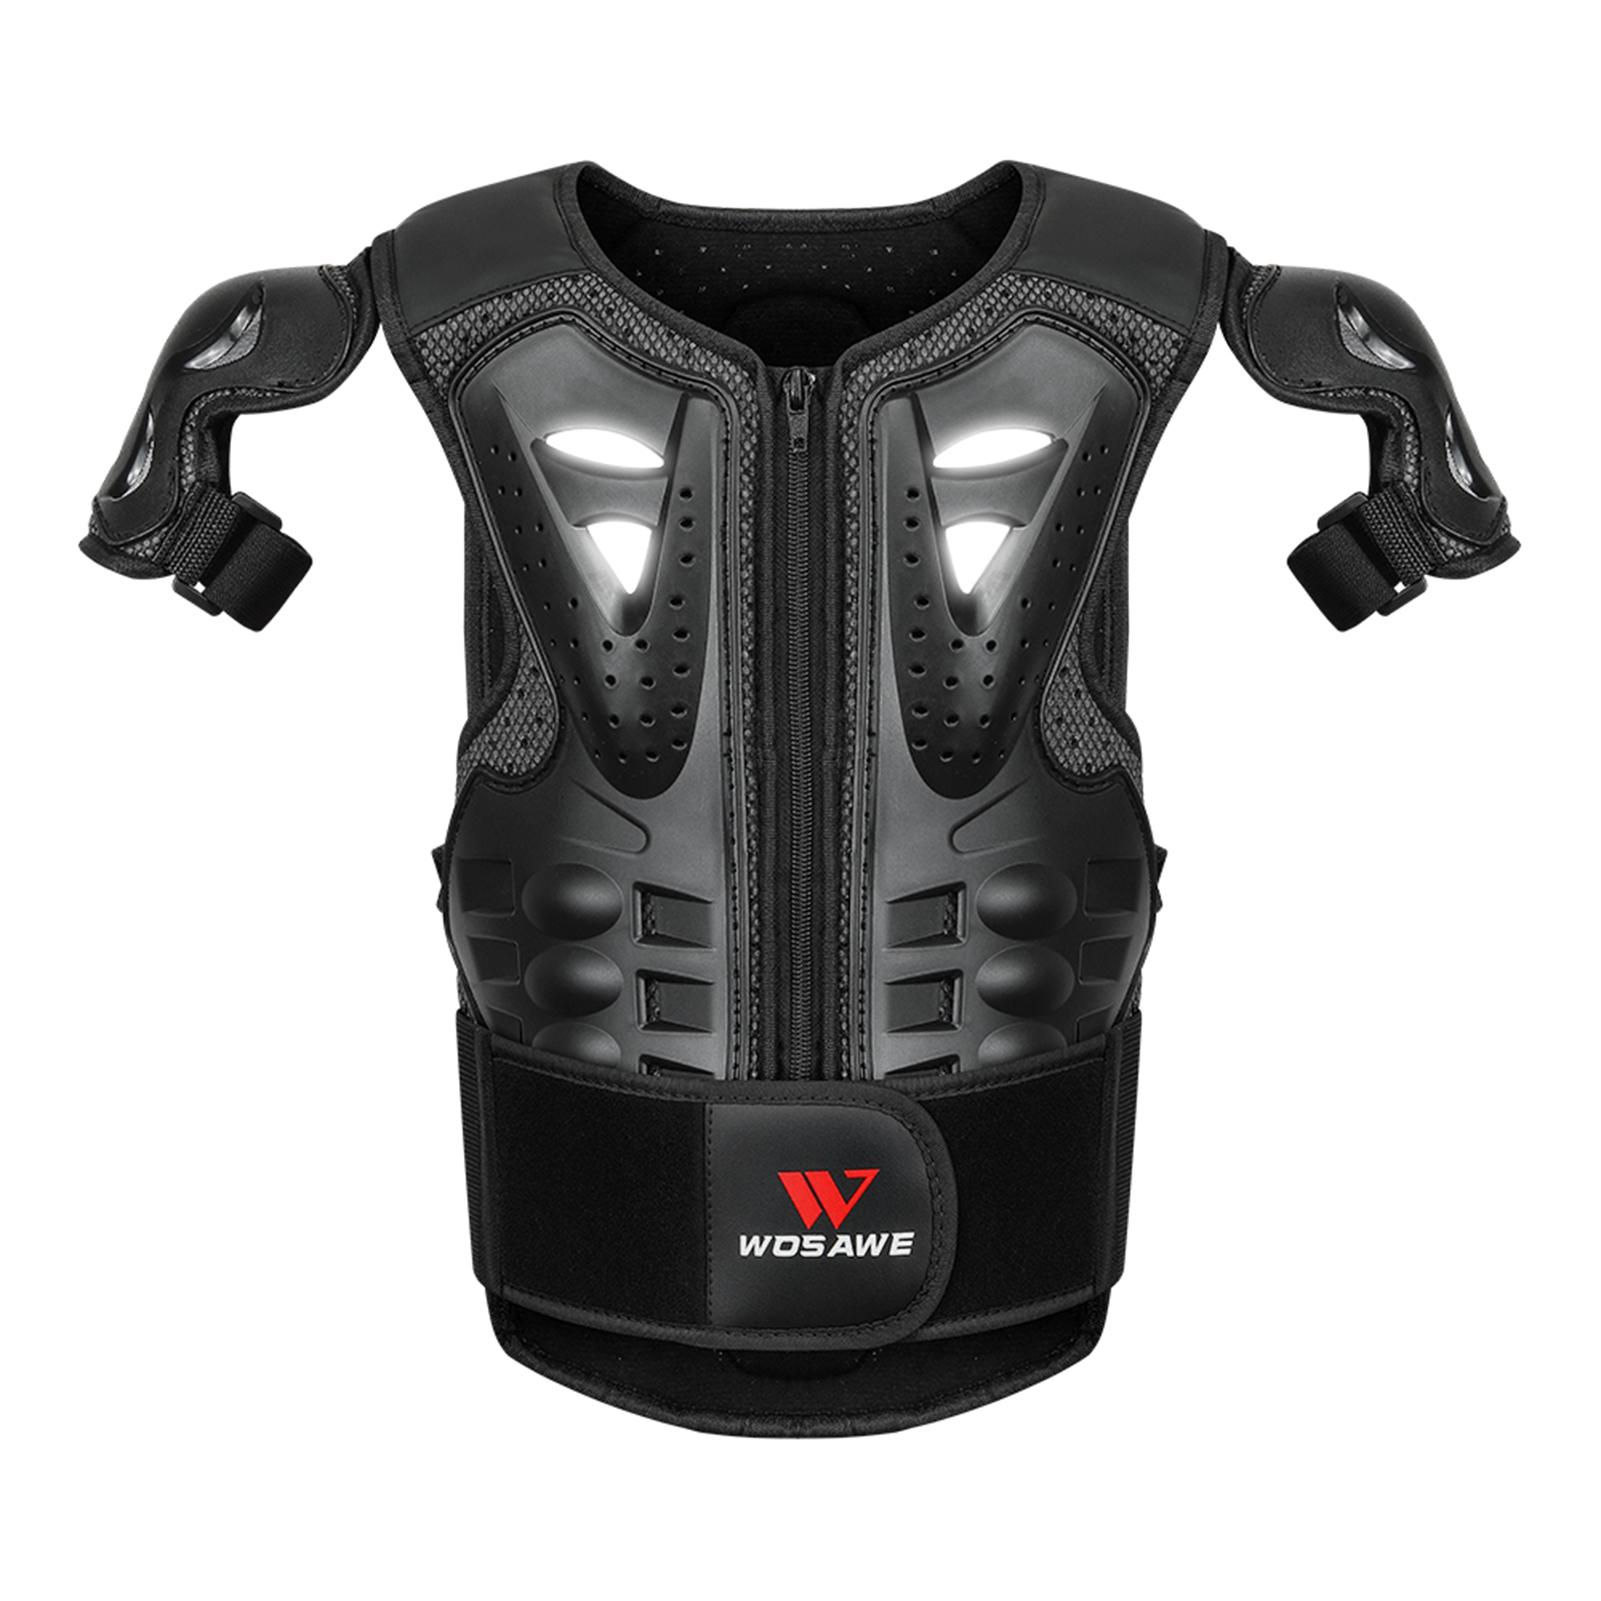 Áo giáp ngực-lưng trẻ em Wosawe Mo267 bảo vệ các bộ phận nhạy cảm khi chơi thể thao